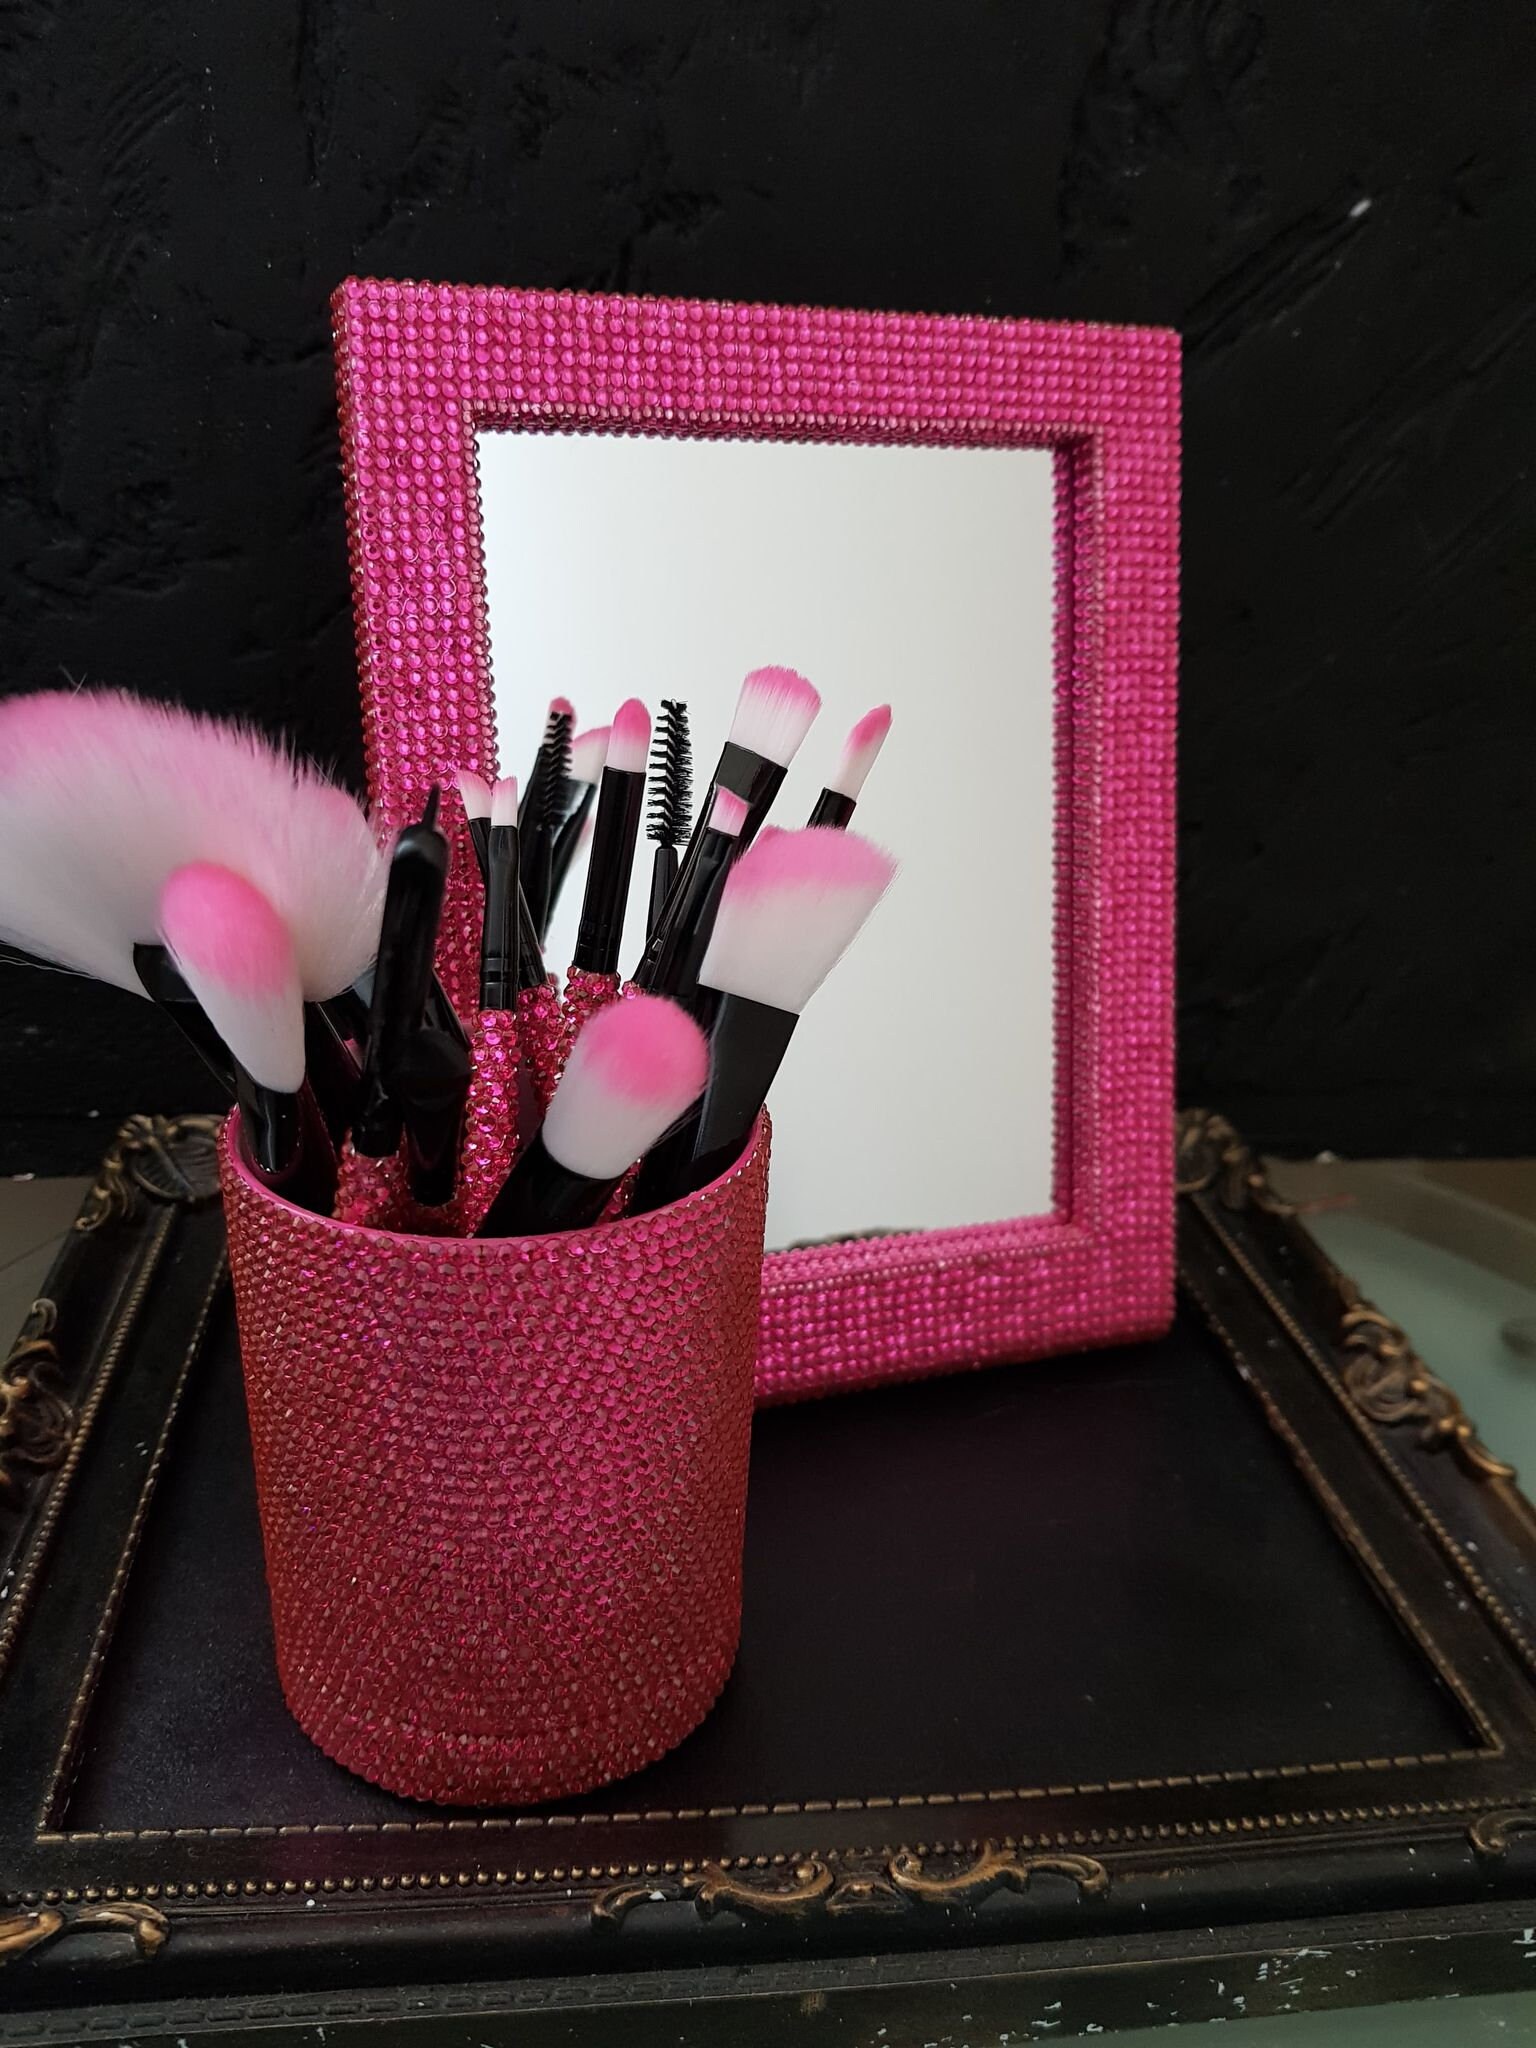 15 Stück Bling Crystal Schillernde Make-Up Pinsel Set + Halter Makeup Spiegel Fertig Als Geschenk von Etsy - LovelyBoutiqueGB